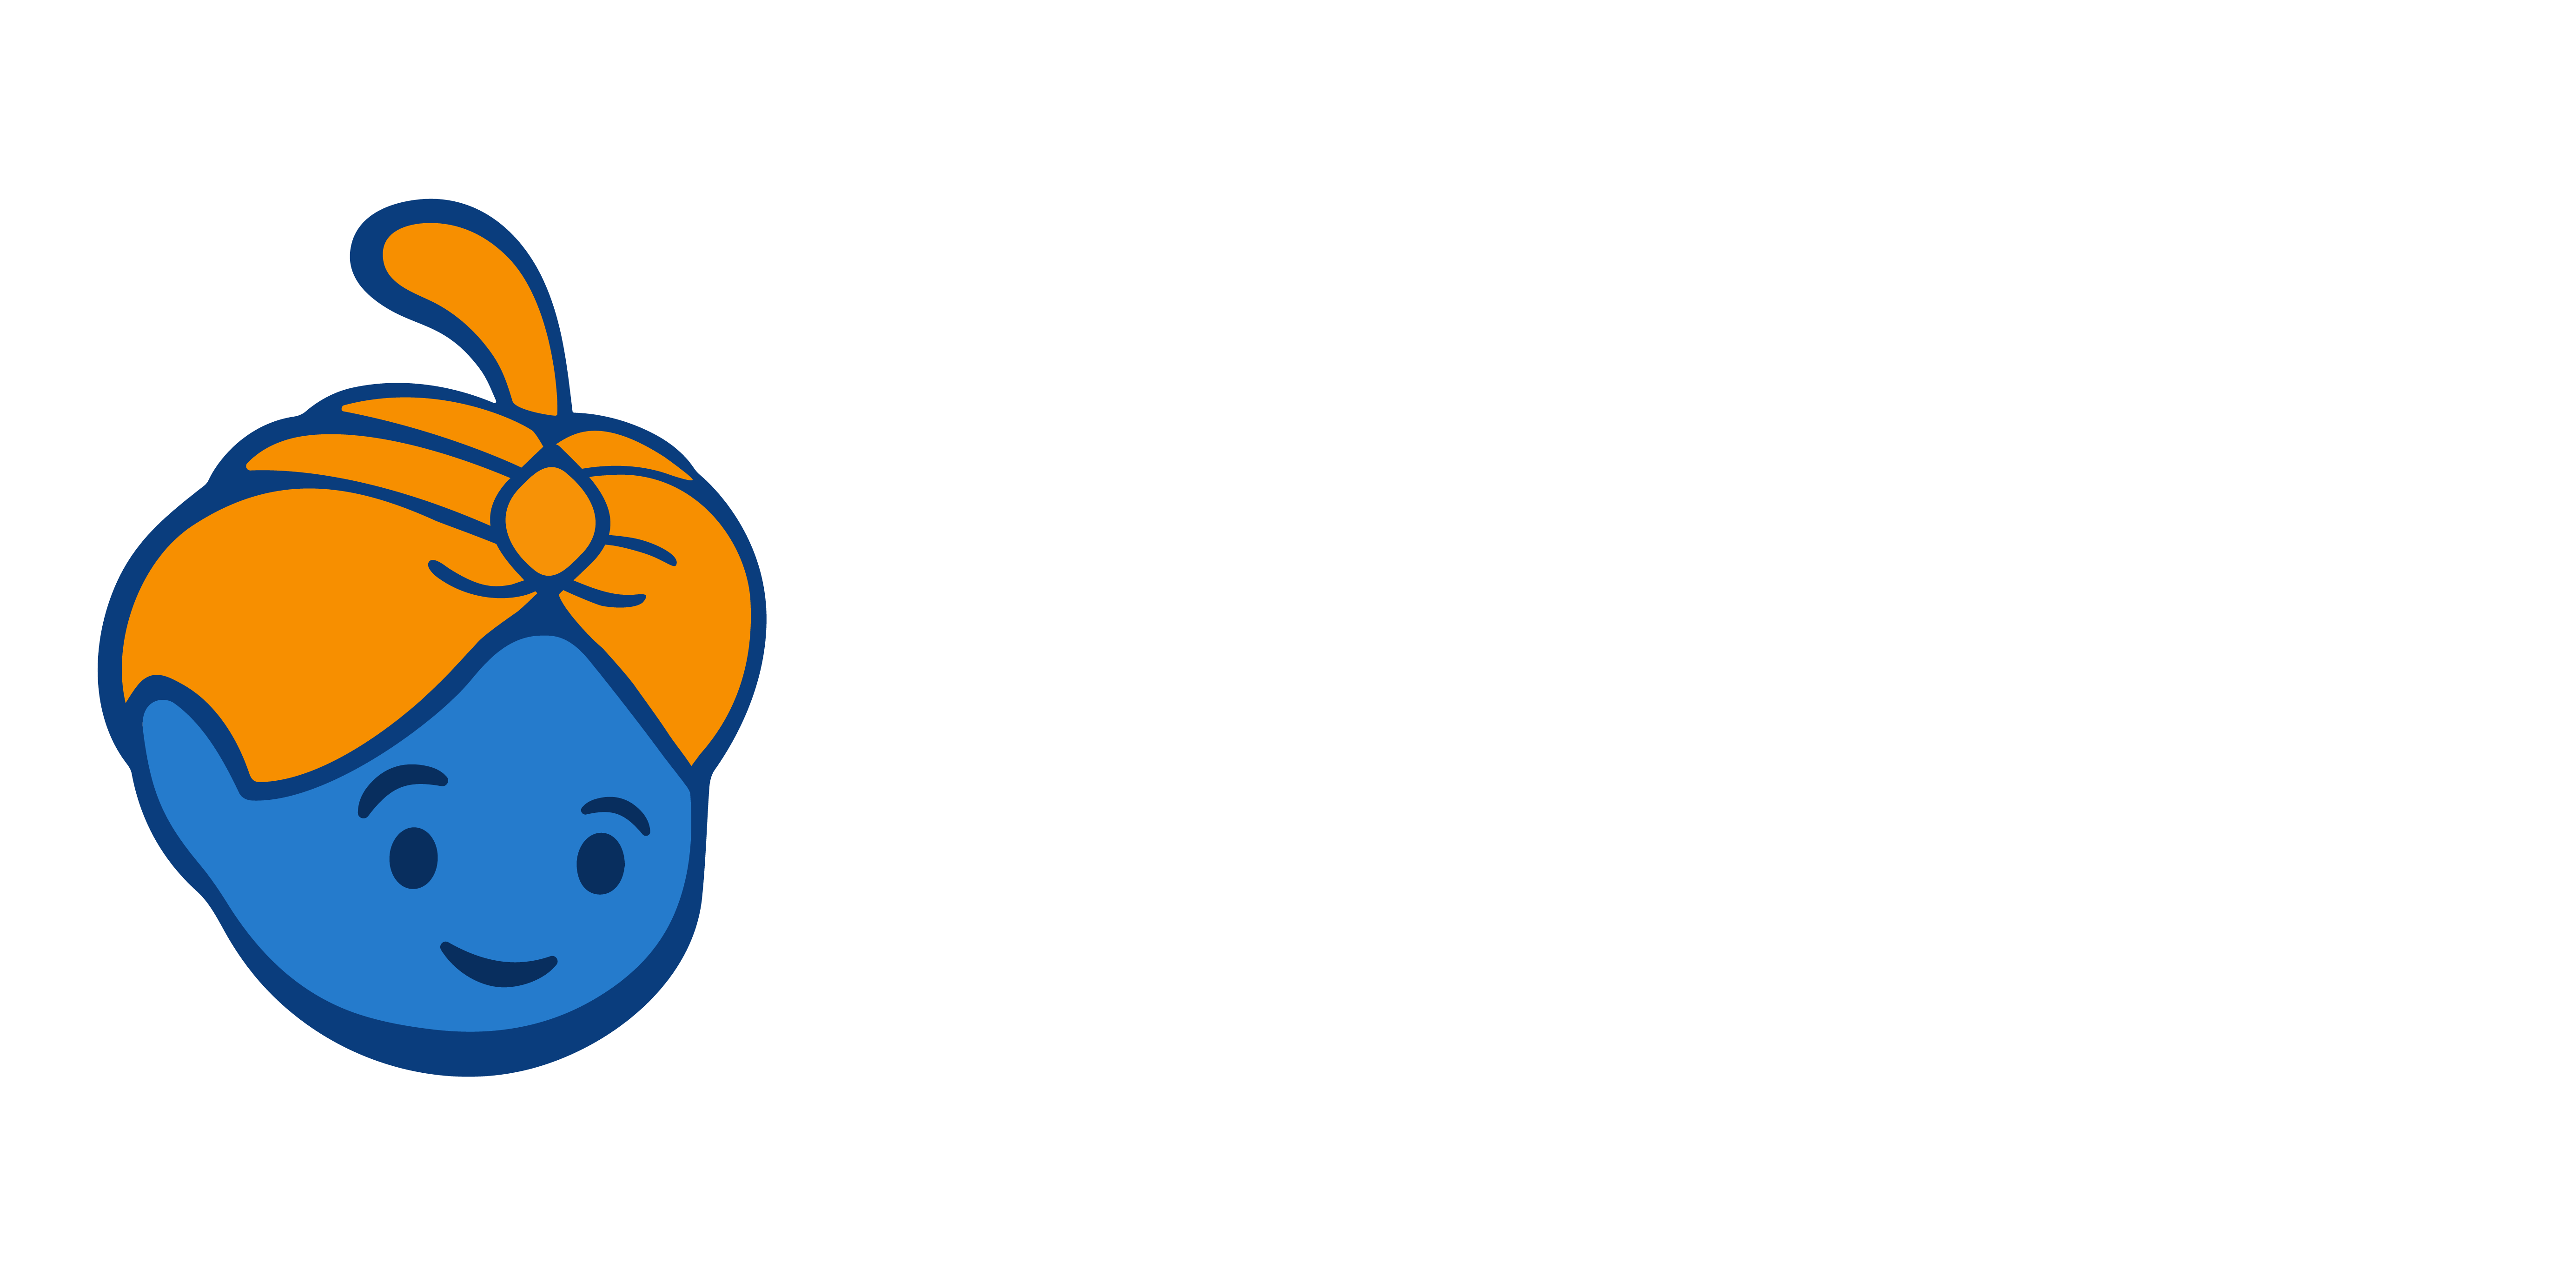 elGenioX